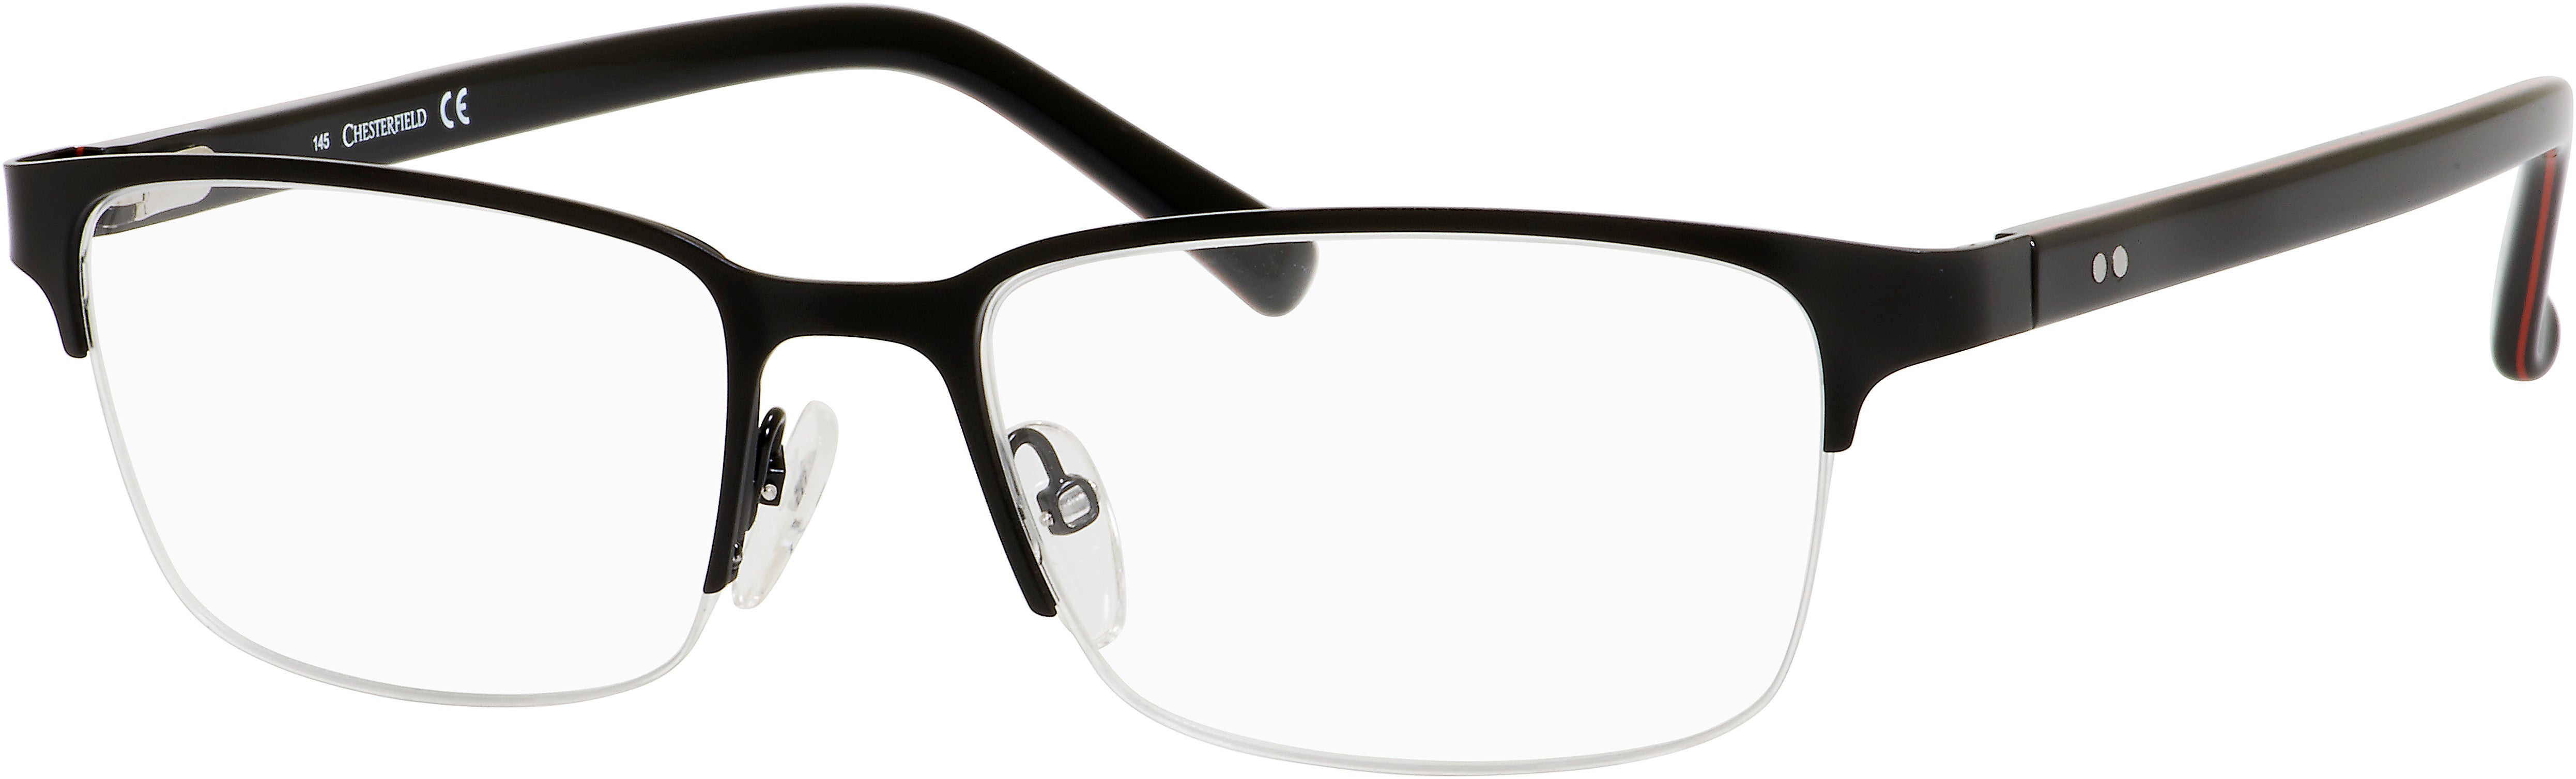  Chesterfield 29 XL Rectangular Eyeglasses 0003-0003  Semi Matte Black (00 Demo Lens)